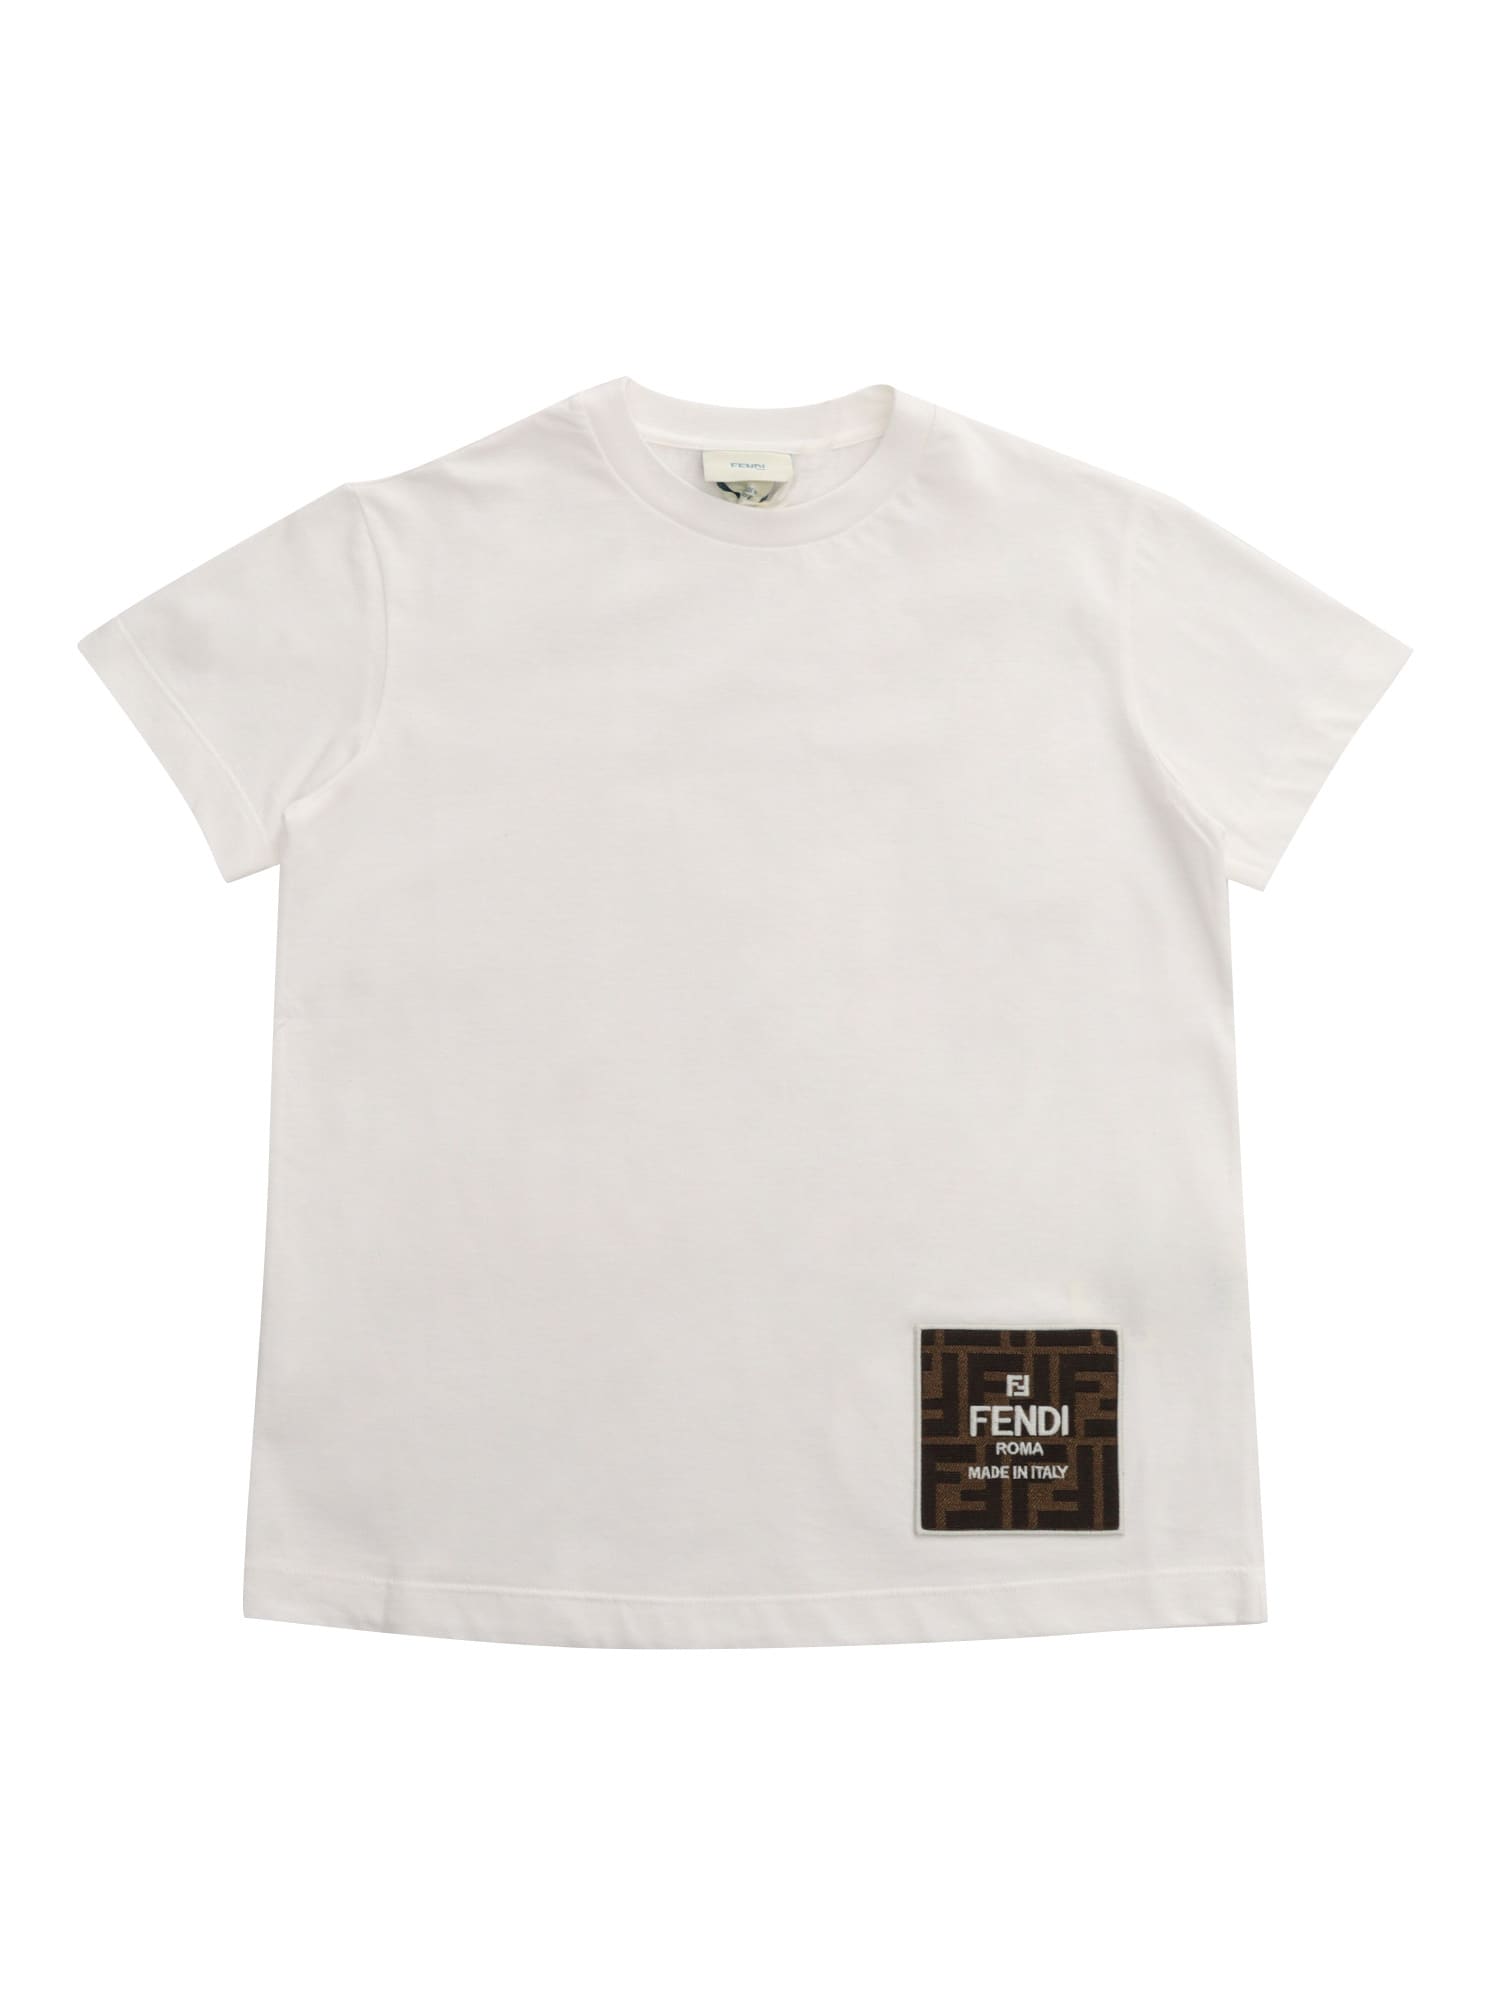 White Fendi T-shirt